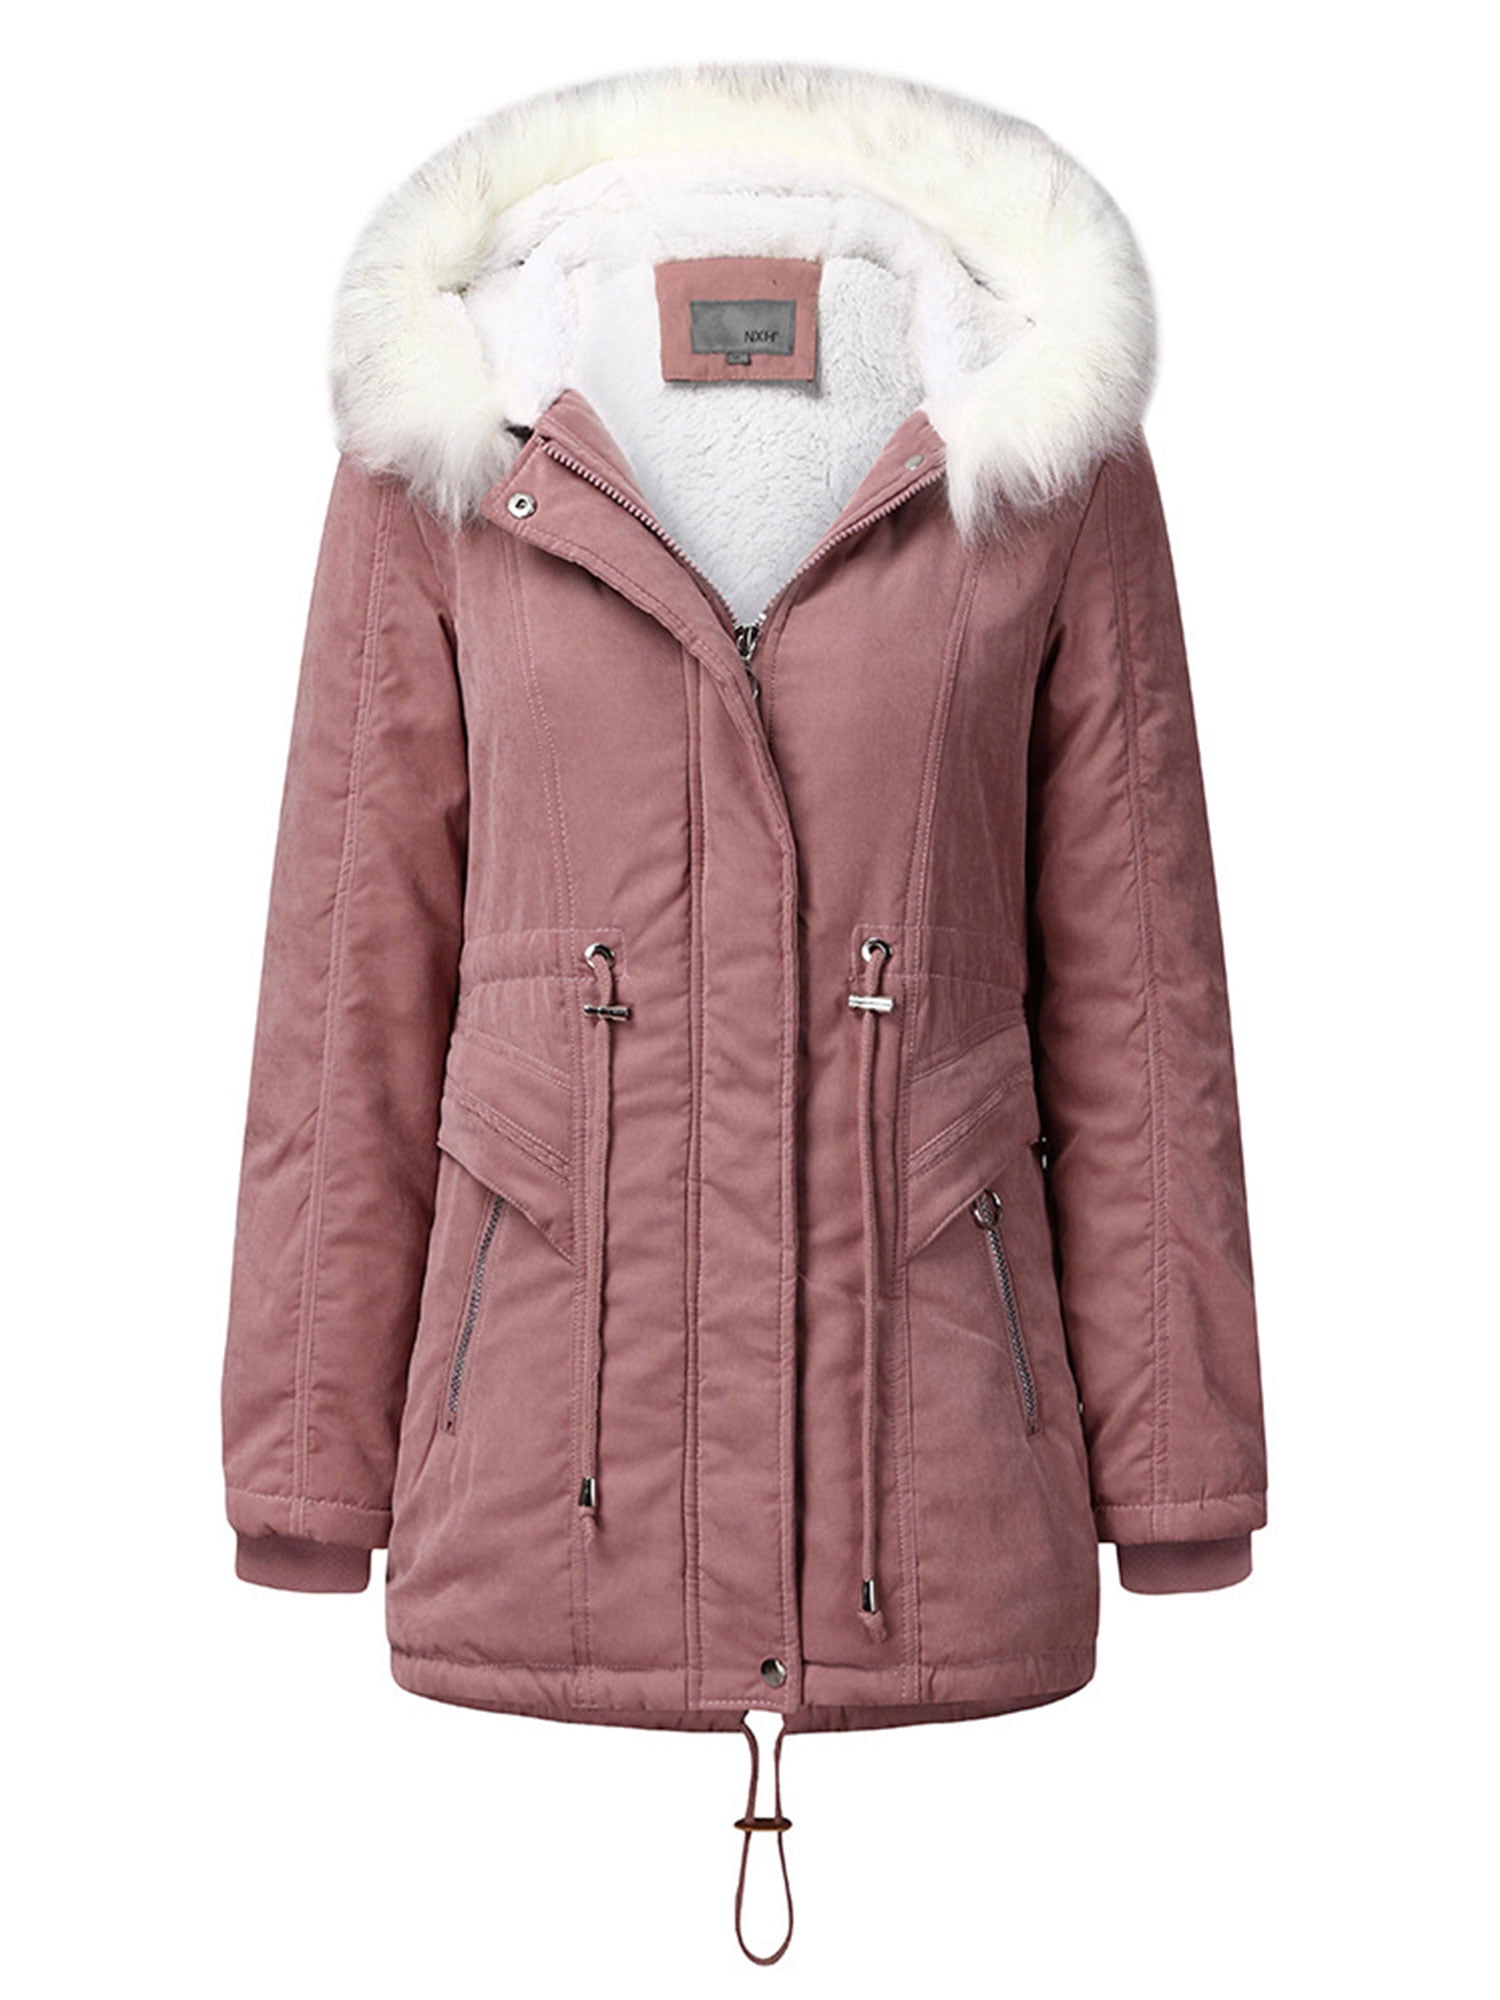 Women's Long Warm Winter Coat Puffer Thicken Parka Jacket Elegant Outwear Fleece Cotton Coat with Fur Hood 